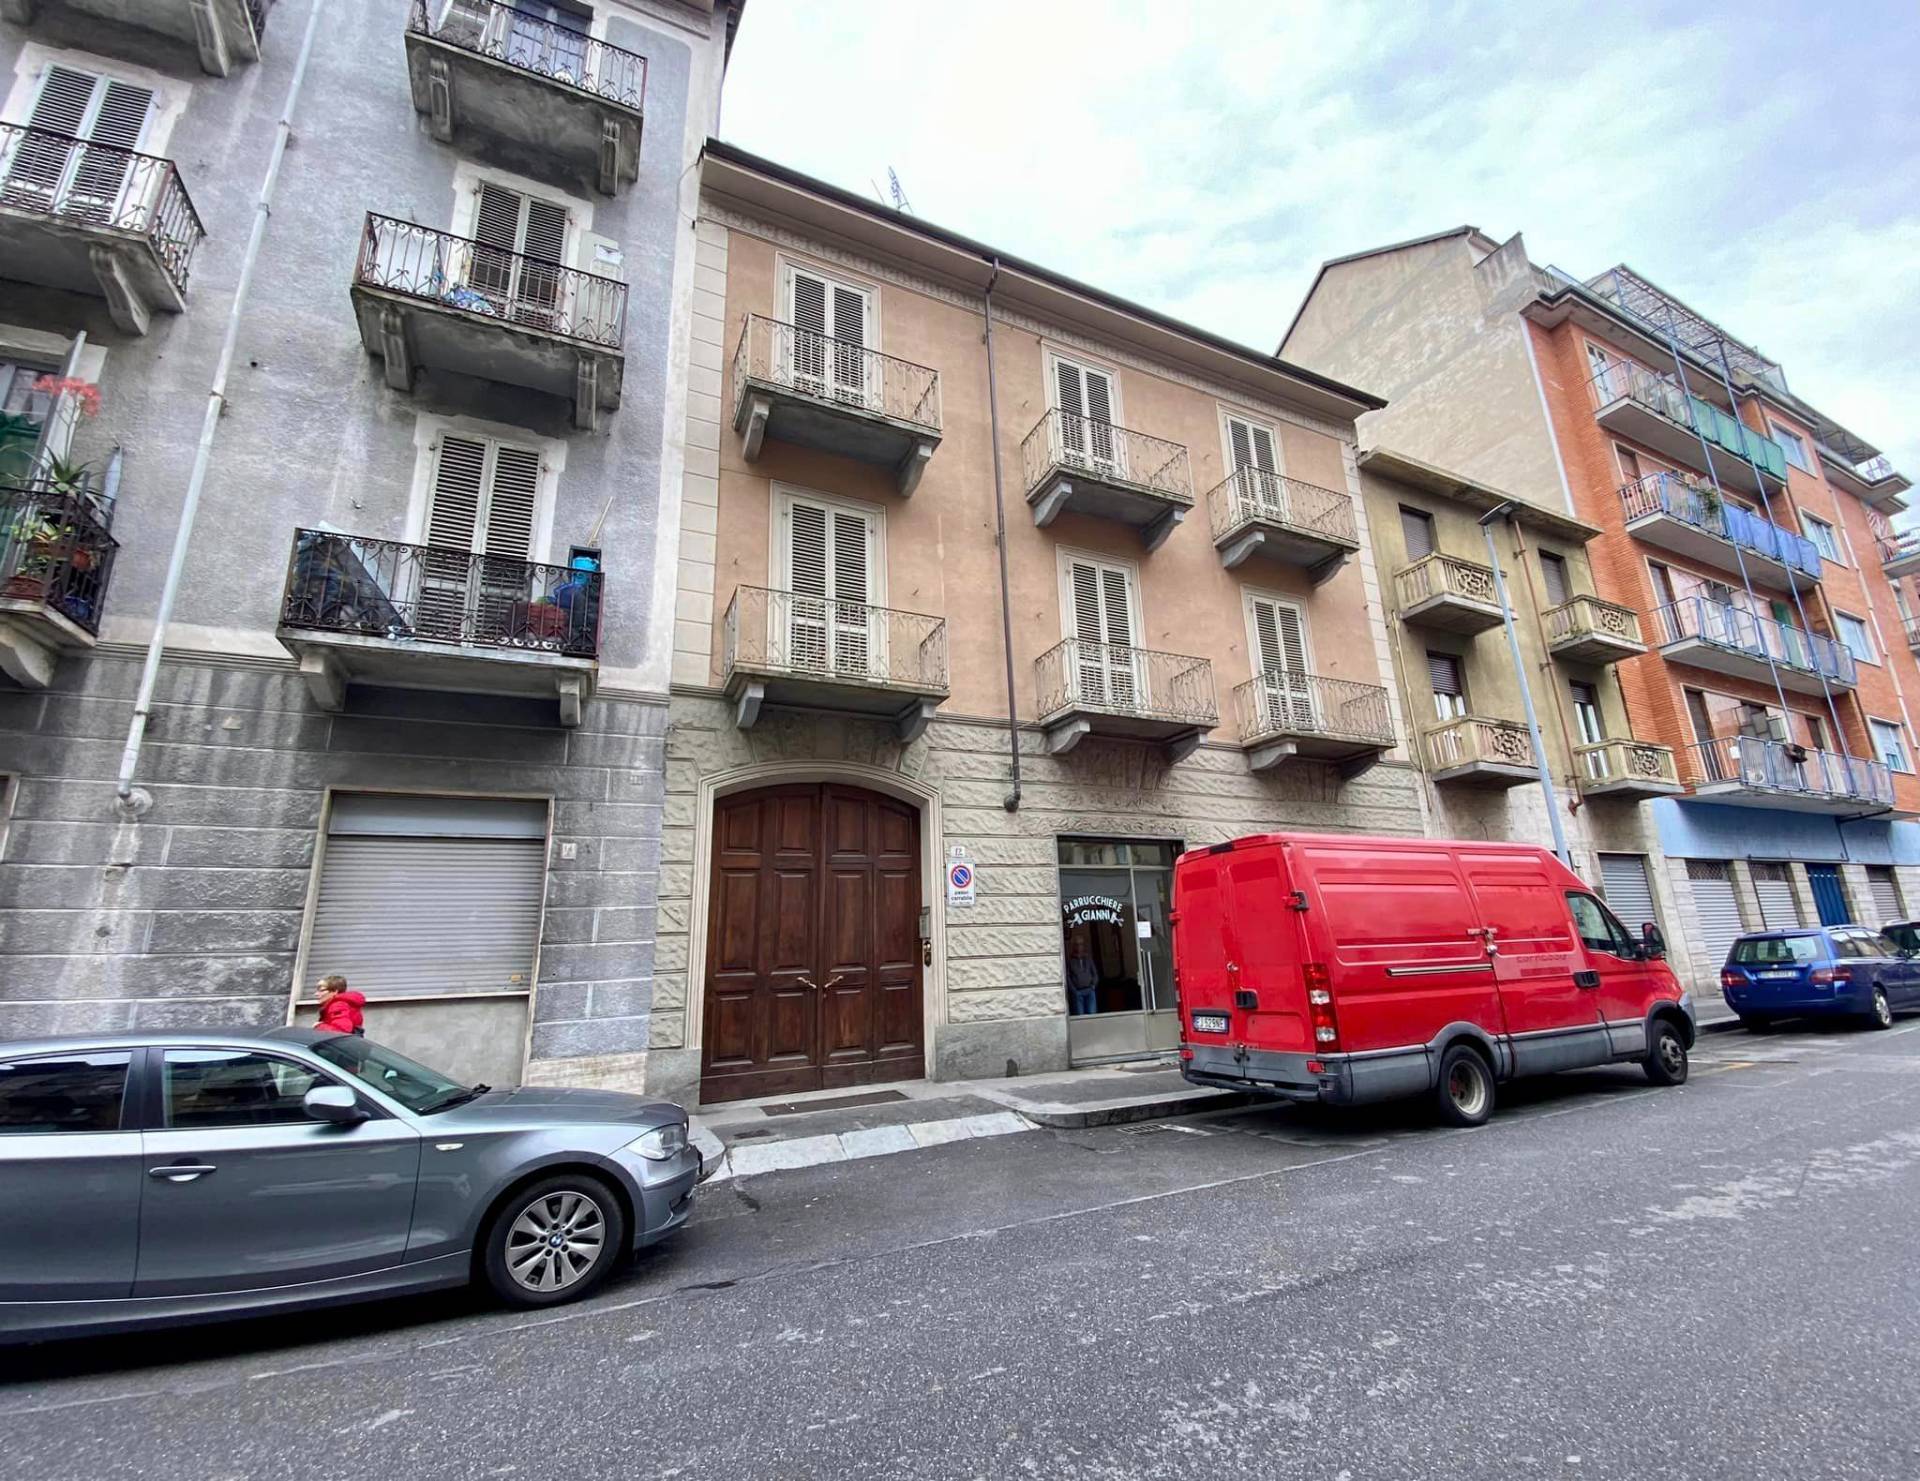 Stabile - Palazzo in Vendita a Torino